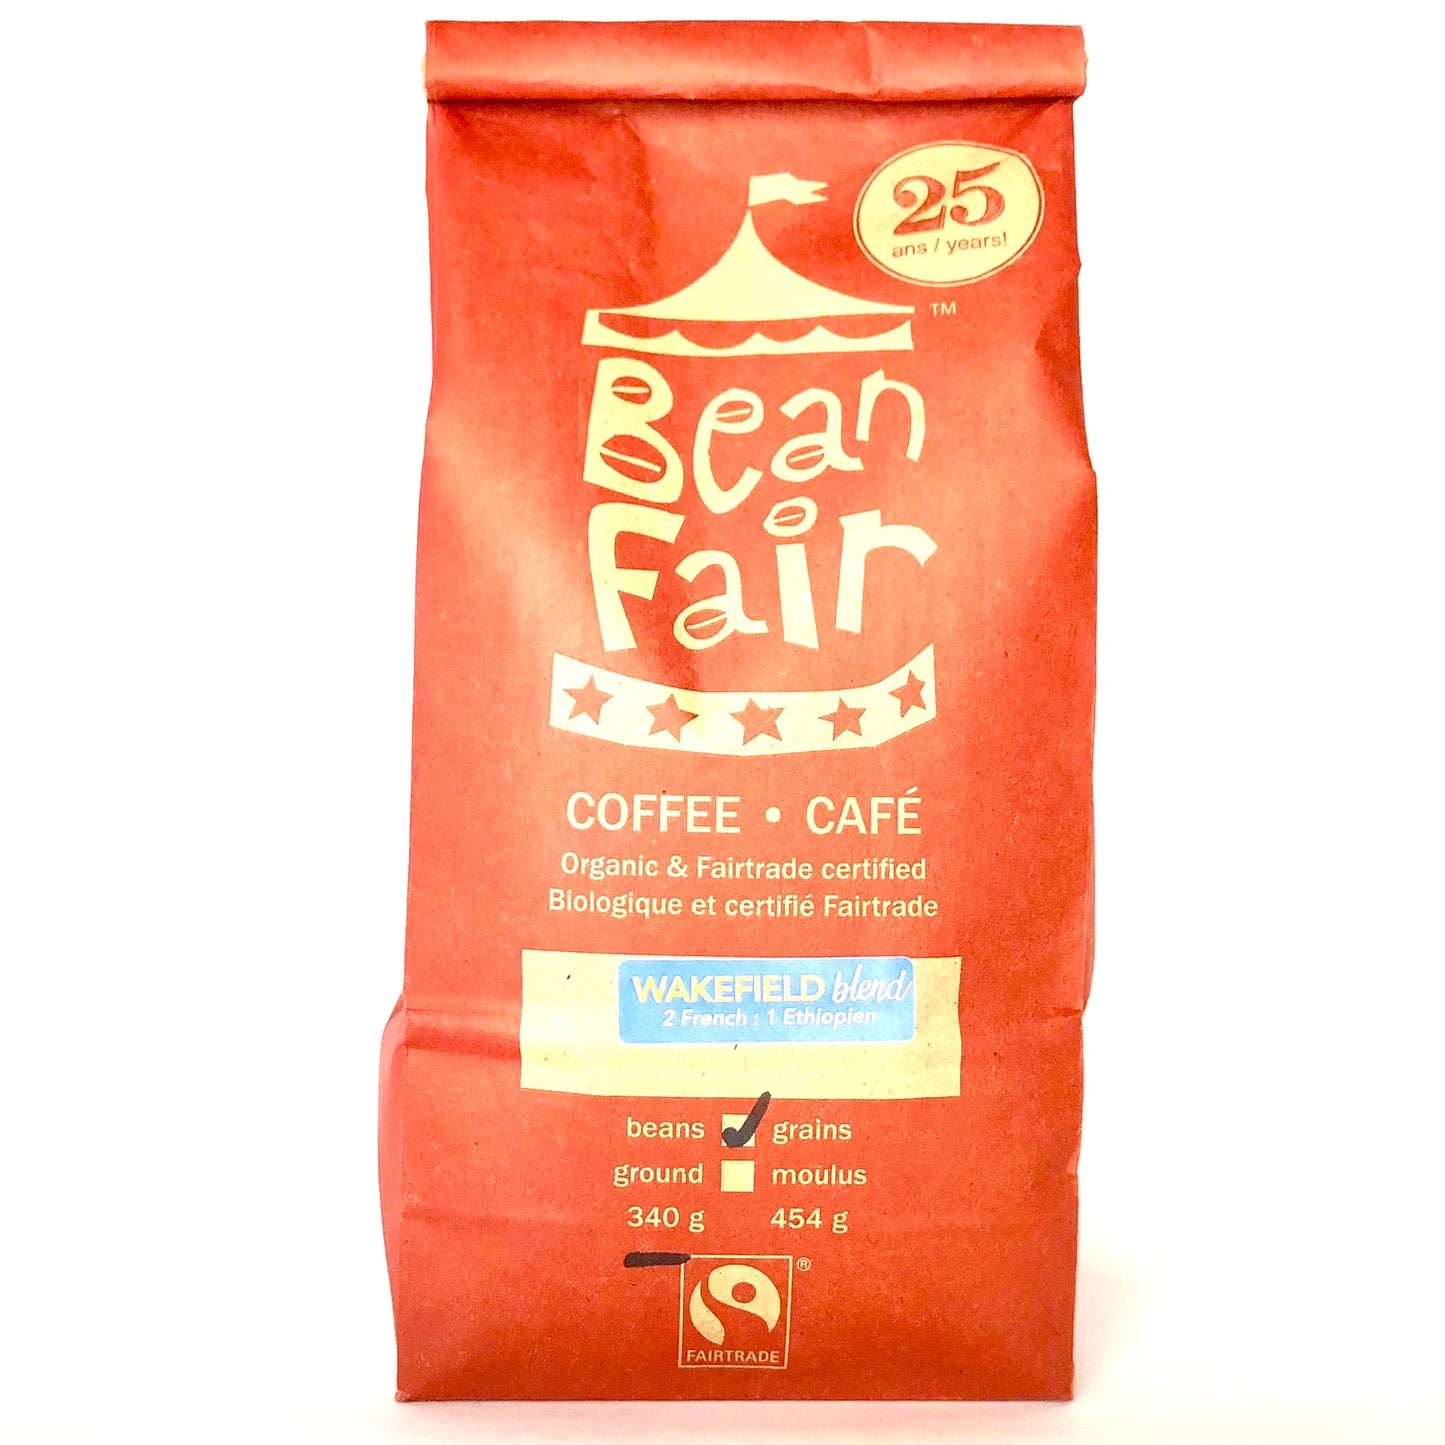 Bean Fair Coffee _ Wakefield Blend